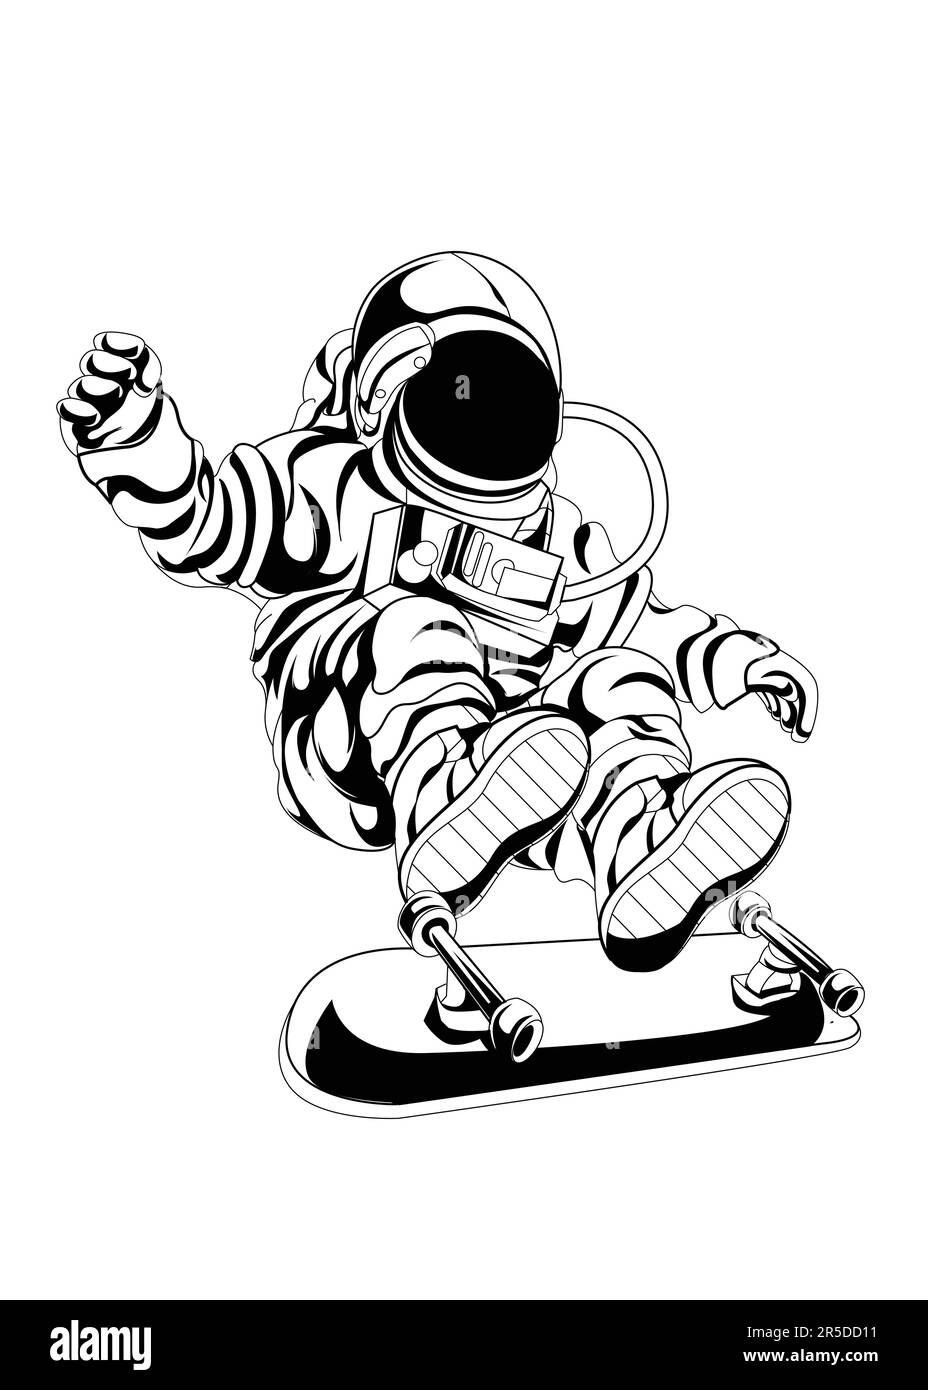 Weltraum-Astronauten-Charakter als Geburtstagsgeschenk für Freunde, Feiern, Veranstaltungen oder Weltraum-Community und Astronauten. Raumfahrt Stock Vektor